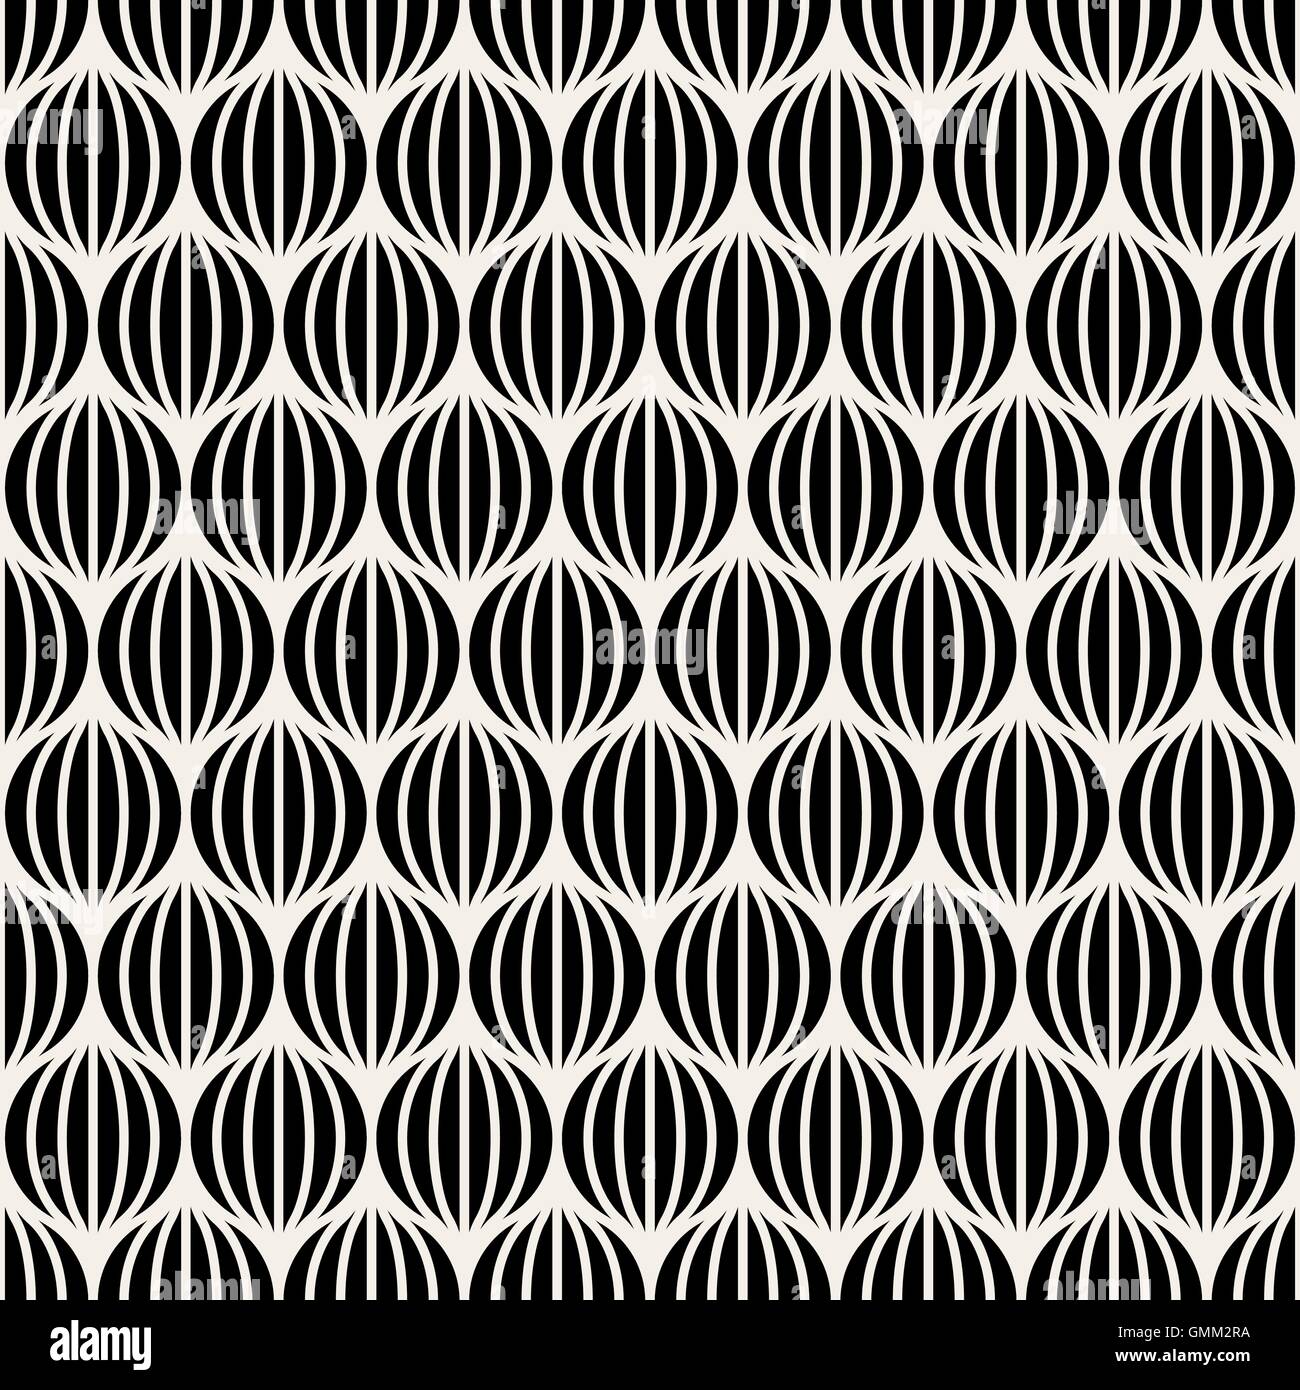 Vector Seamless Black & White linee sfere rotonde illusione ottica Pattern Illustrazione Vettoriale